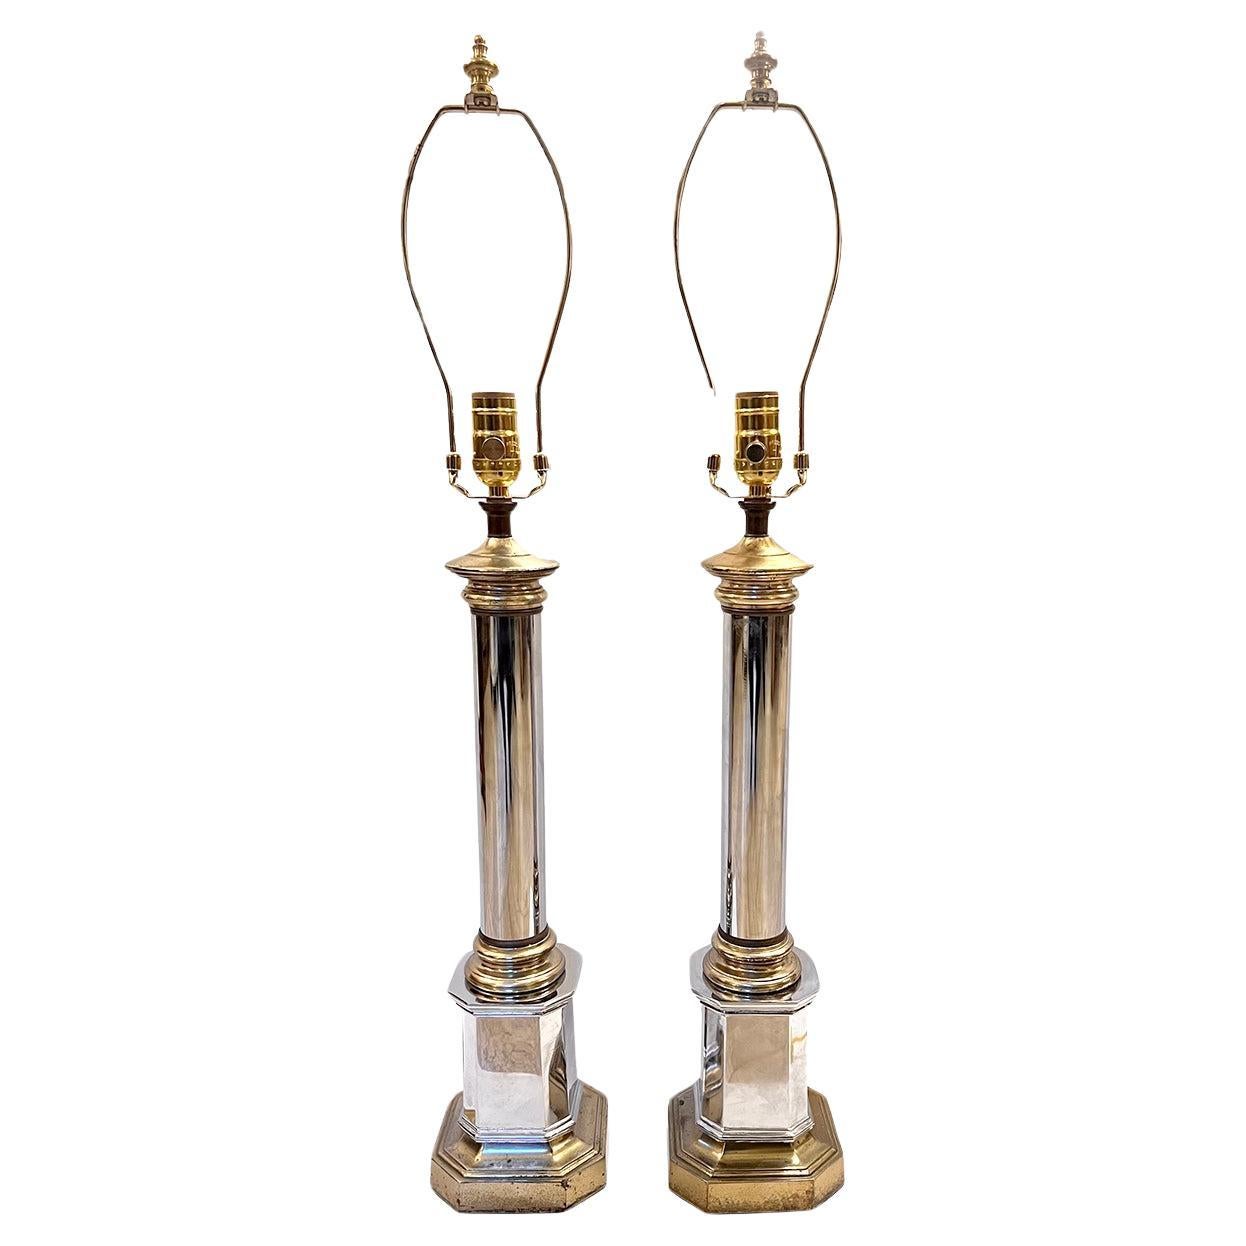 Pair of Midcentury Nickel Plated Lamps